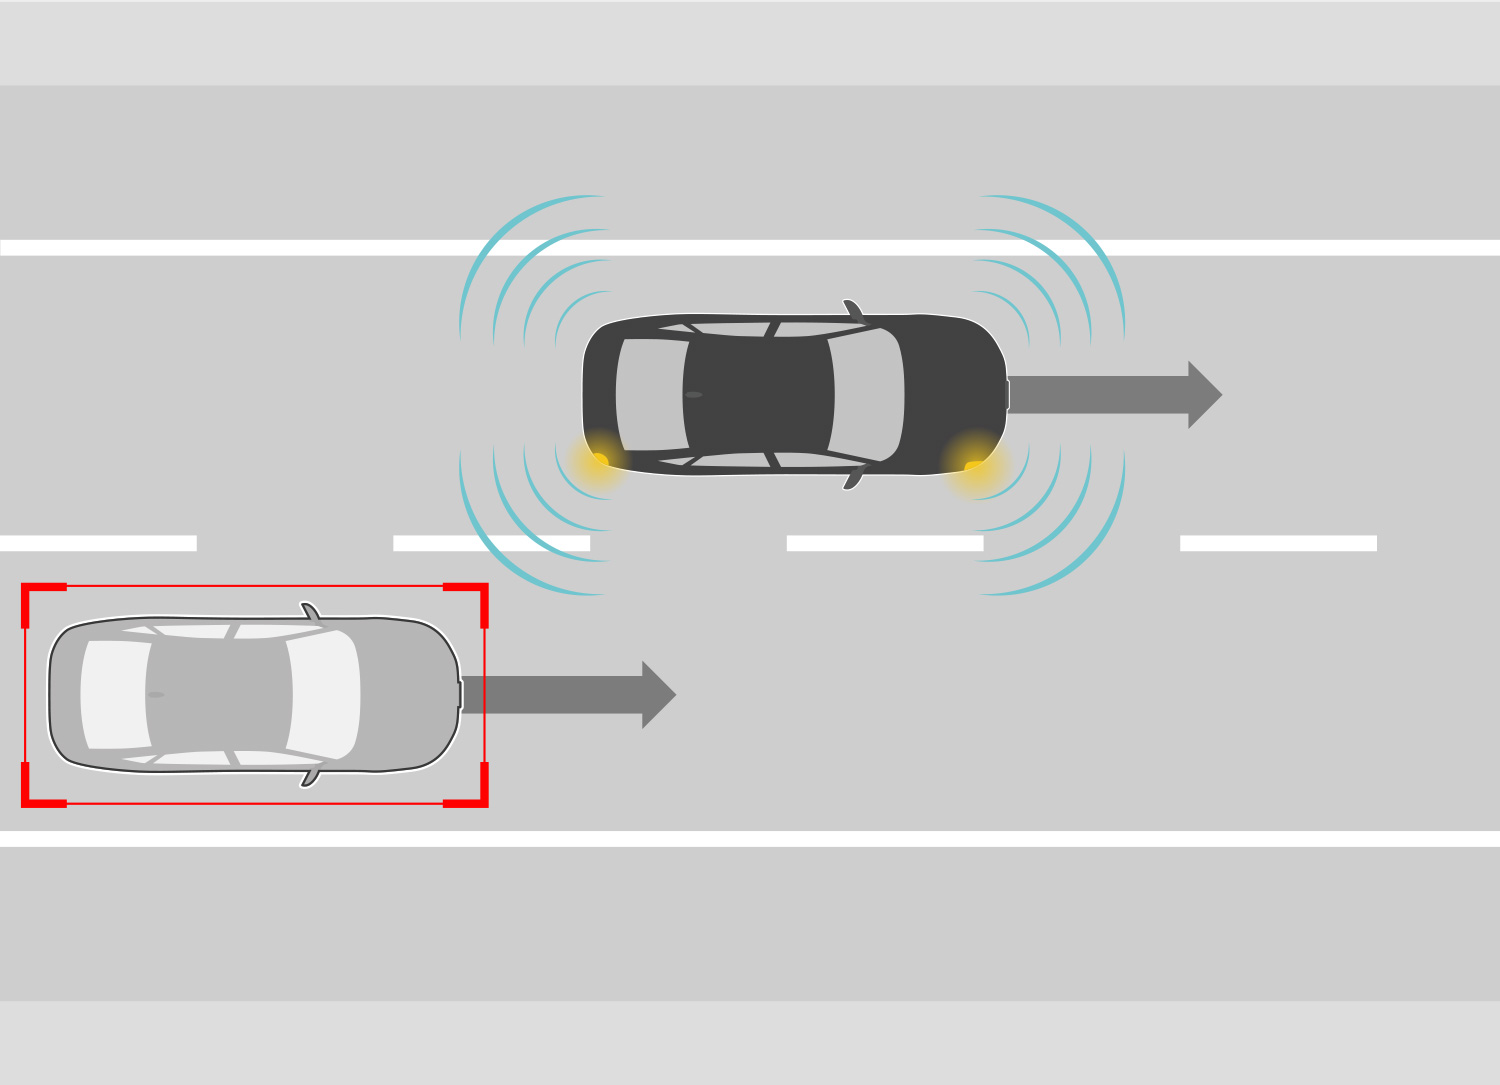 ドライバーが車線変更操作時、後続車との衝突の可能性を検知